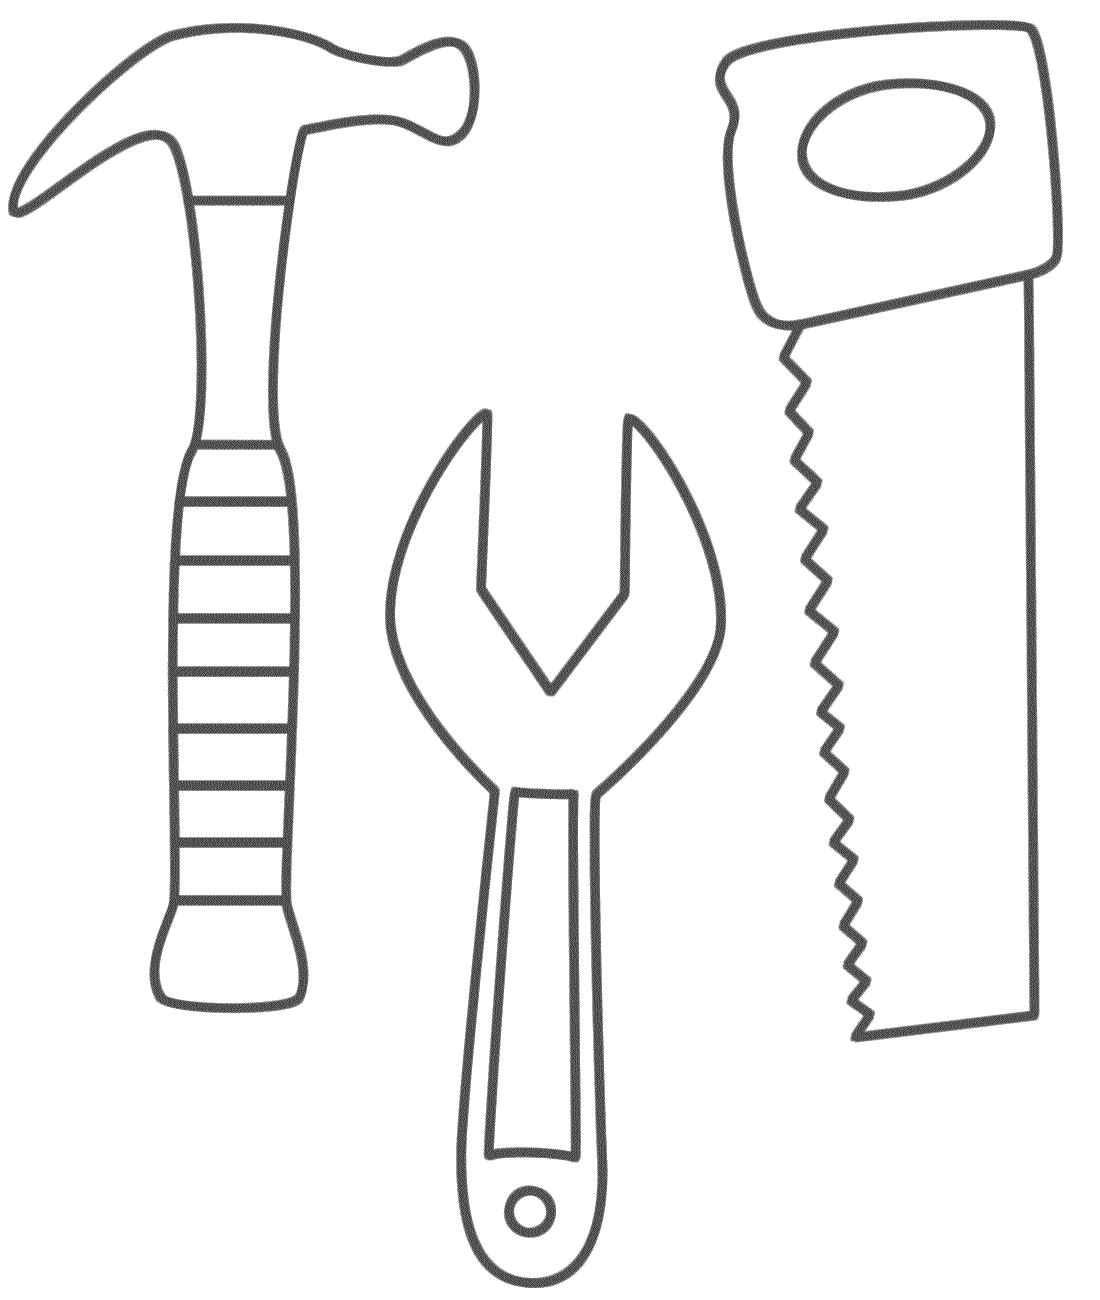 Раскраски для мальчиков: Строительные инструменты, пила, отвертка, молоток (молоток)